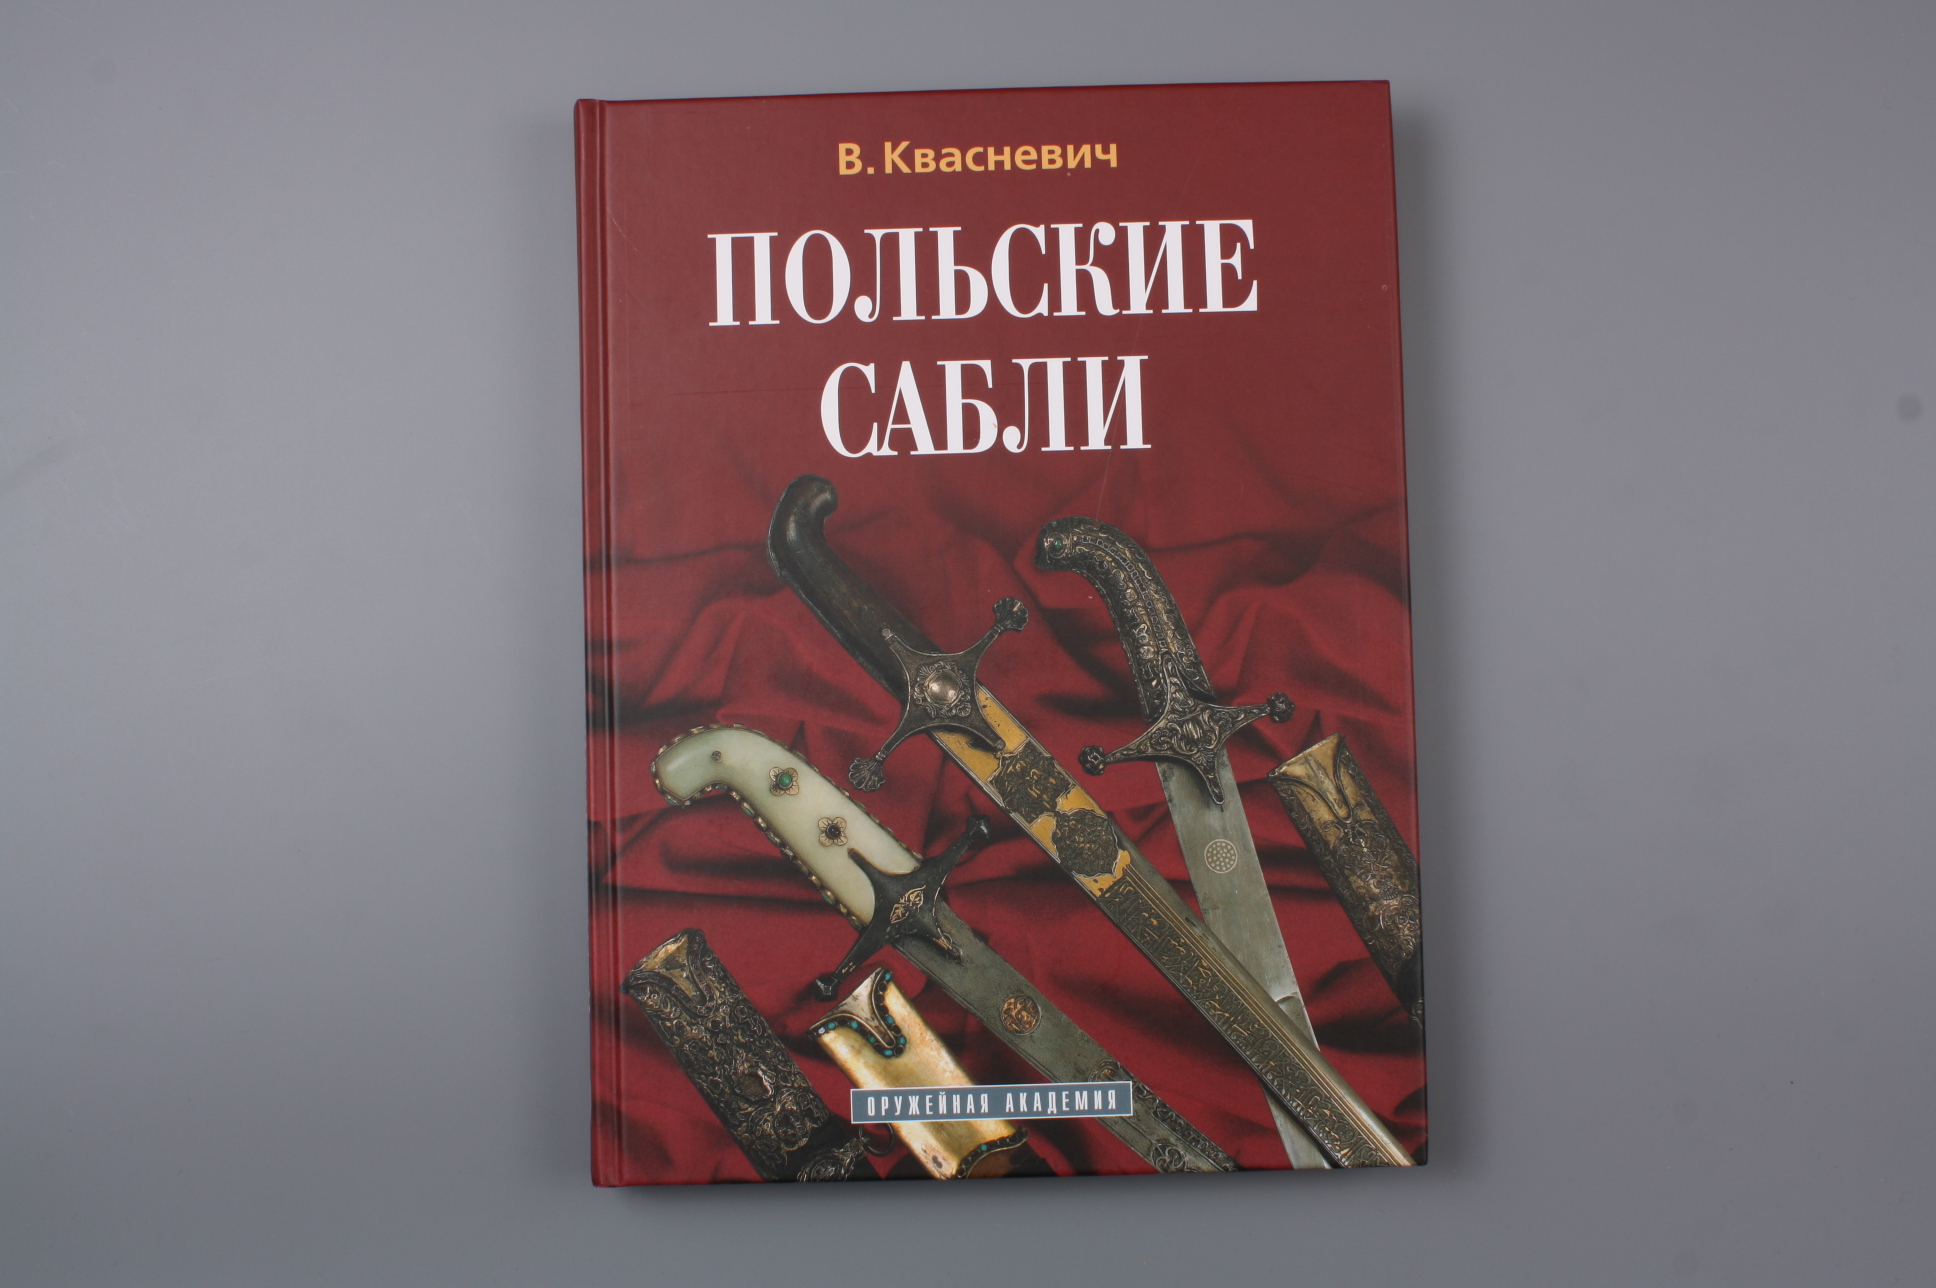 Книга "Польские сабли", Россия.